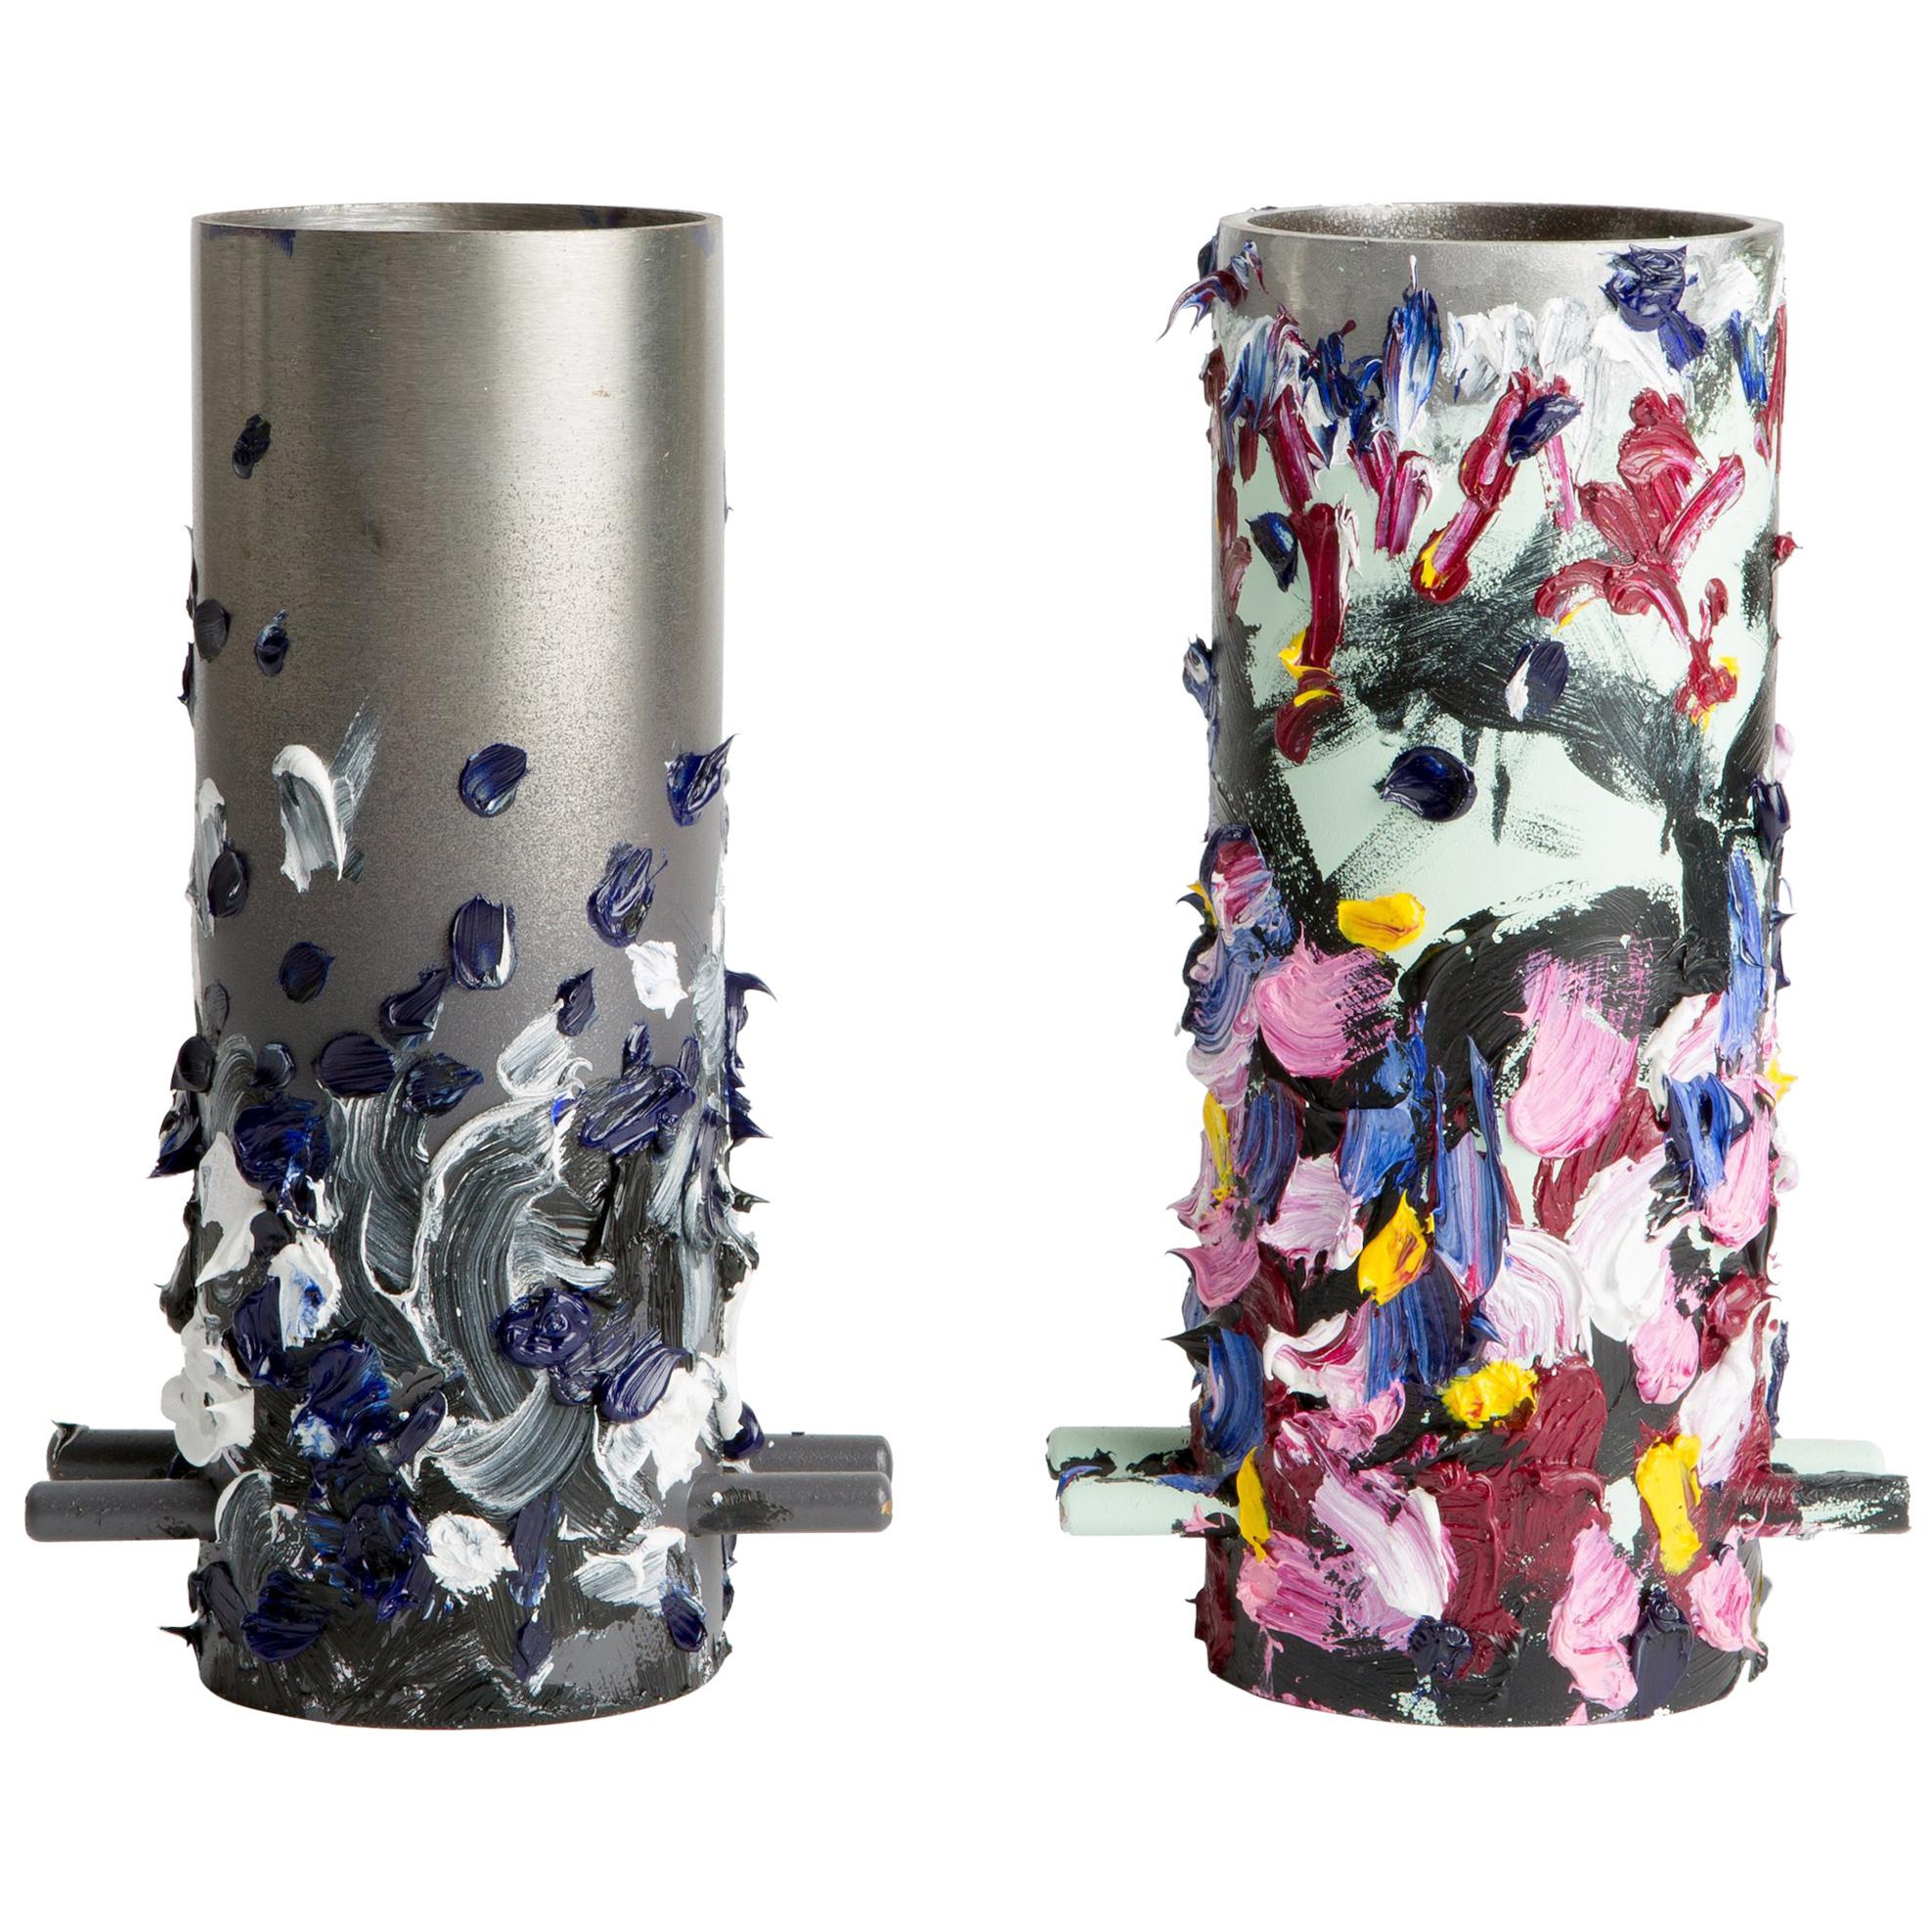 Hand-Painted Steel Cylinders by Eddie Granger